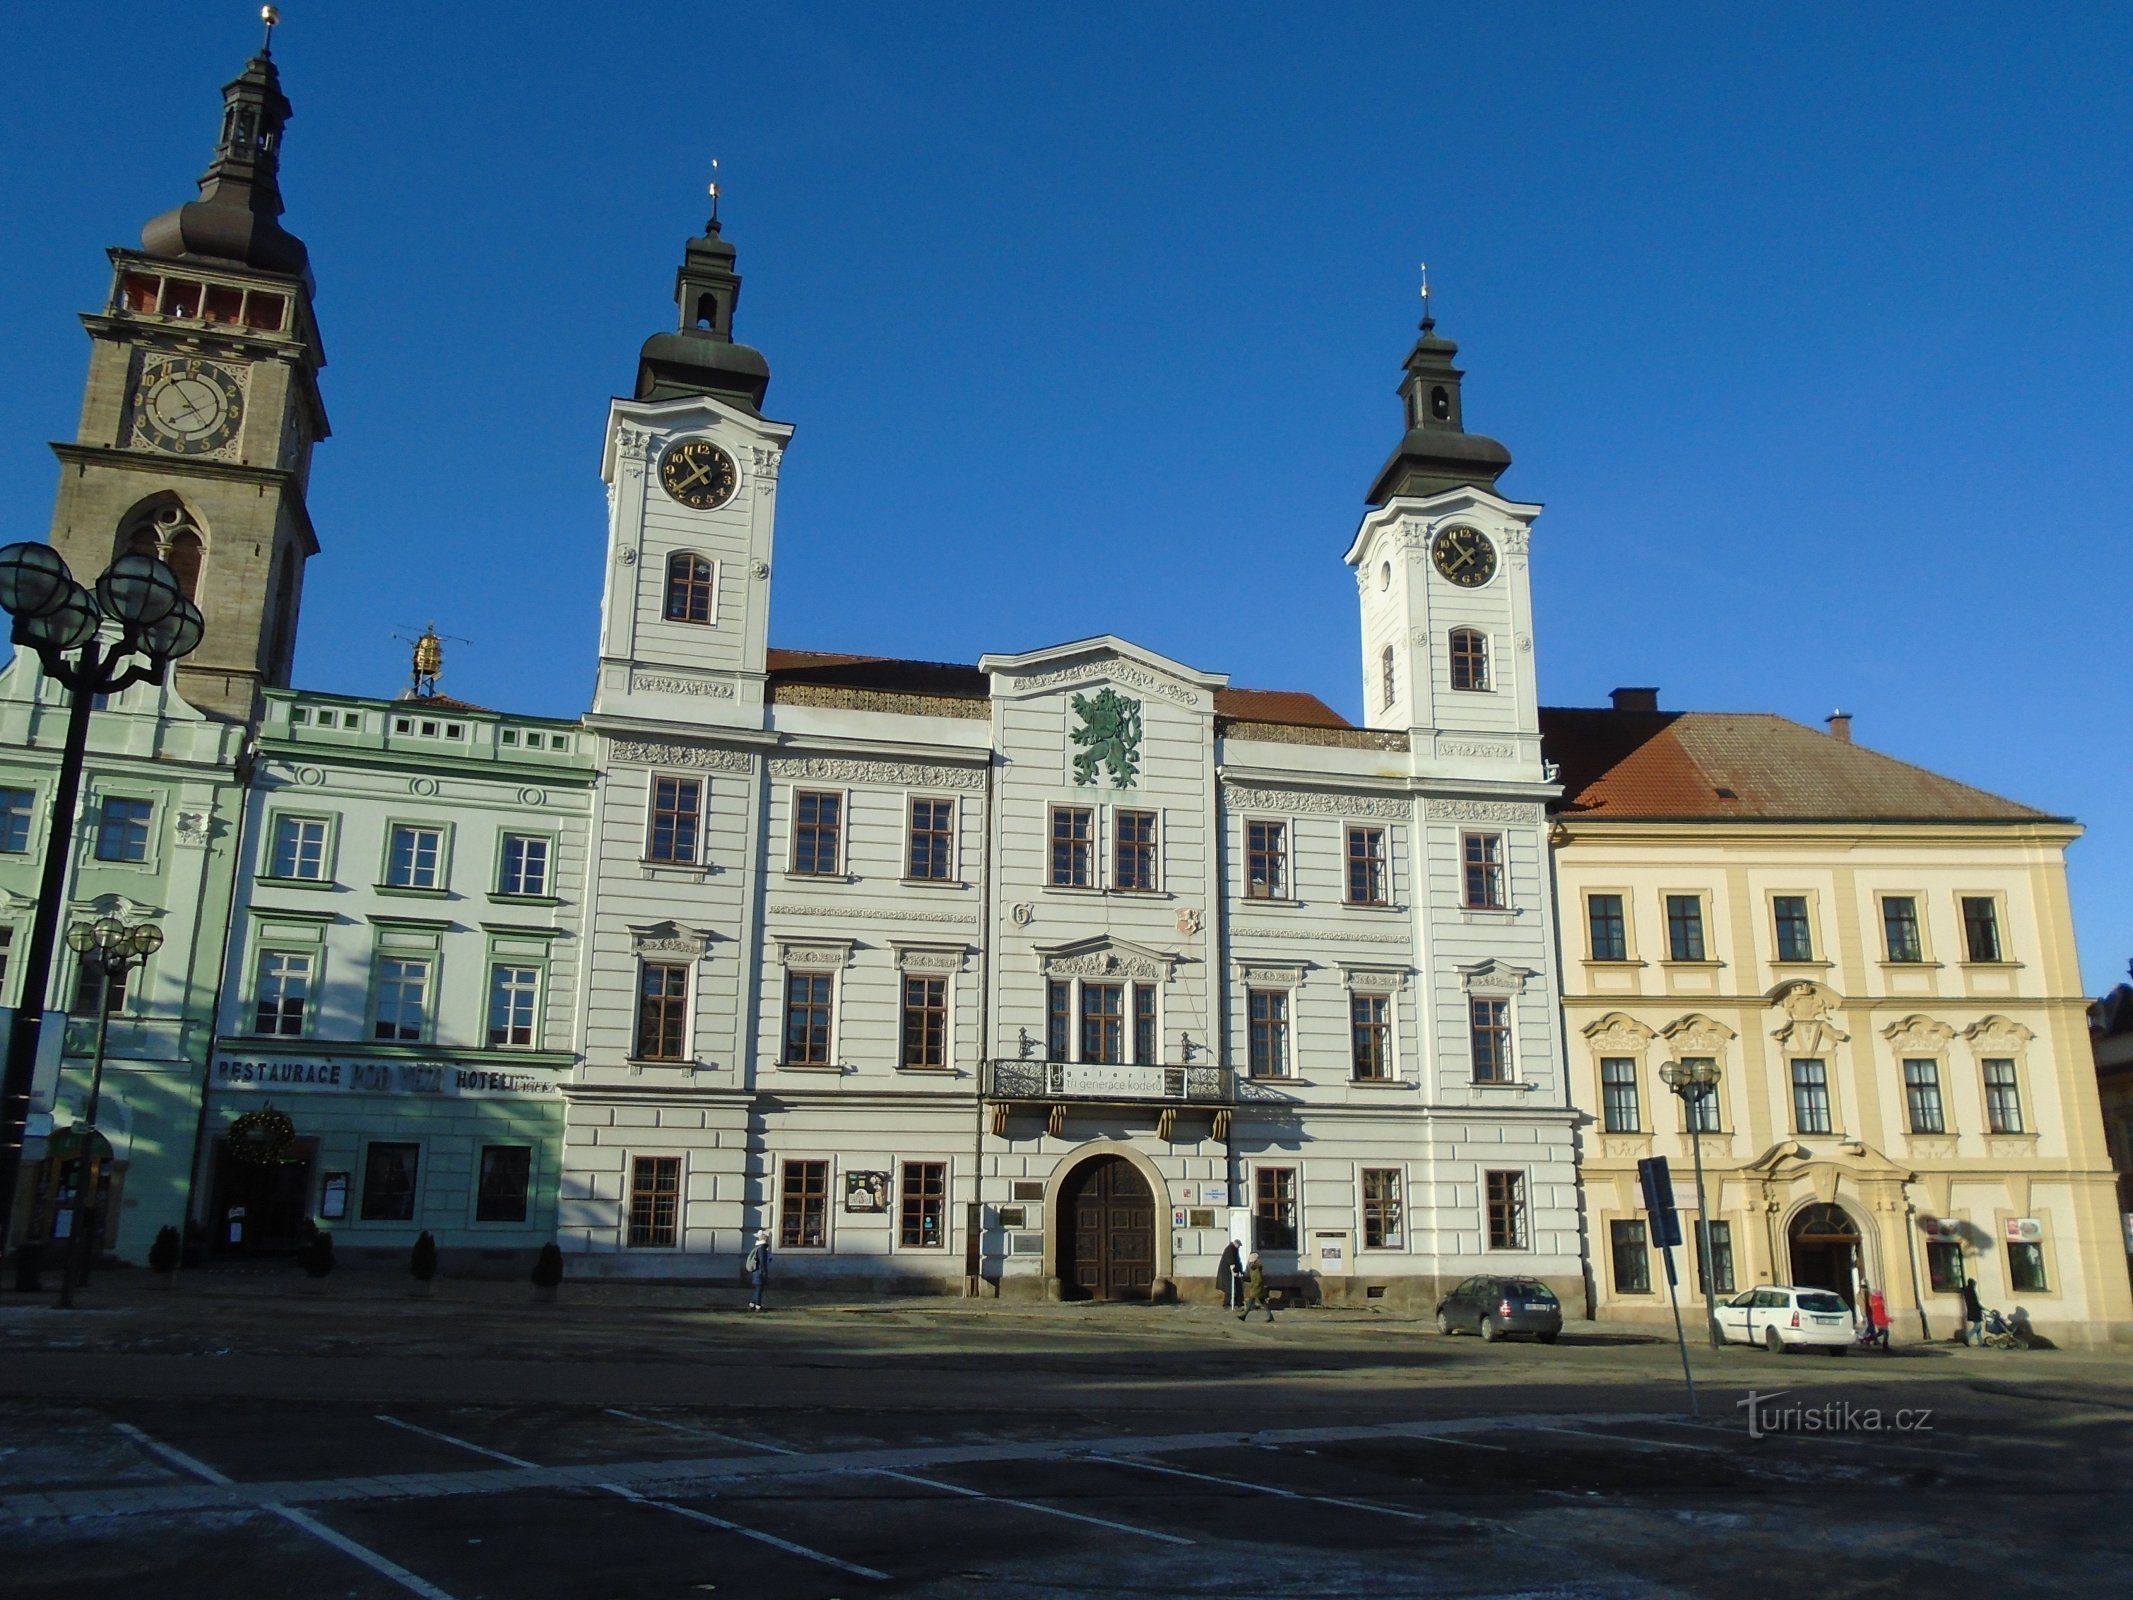 Velké náměstí n. 1 (Hradec Králové, 10.12.2017 ottobre XNUMX)